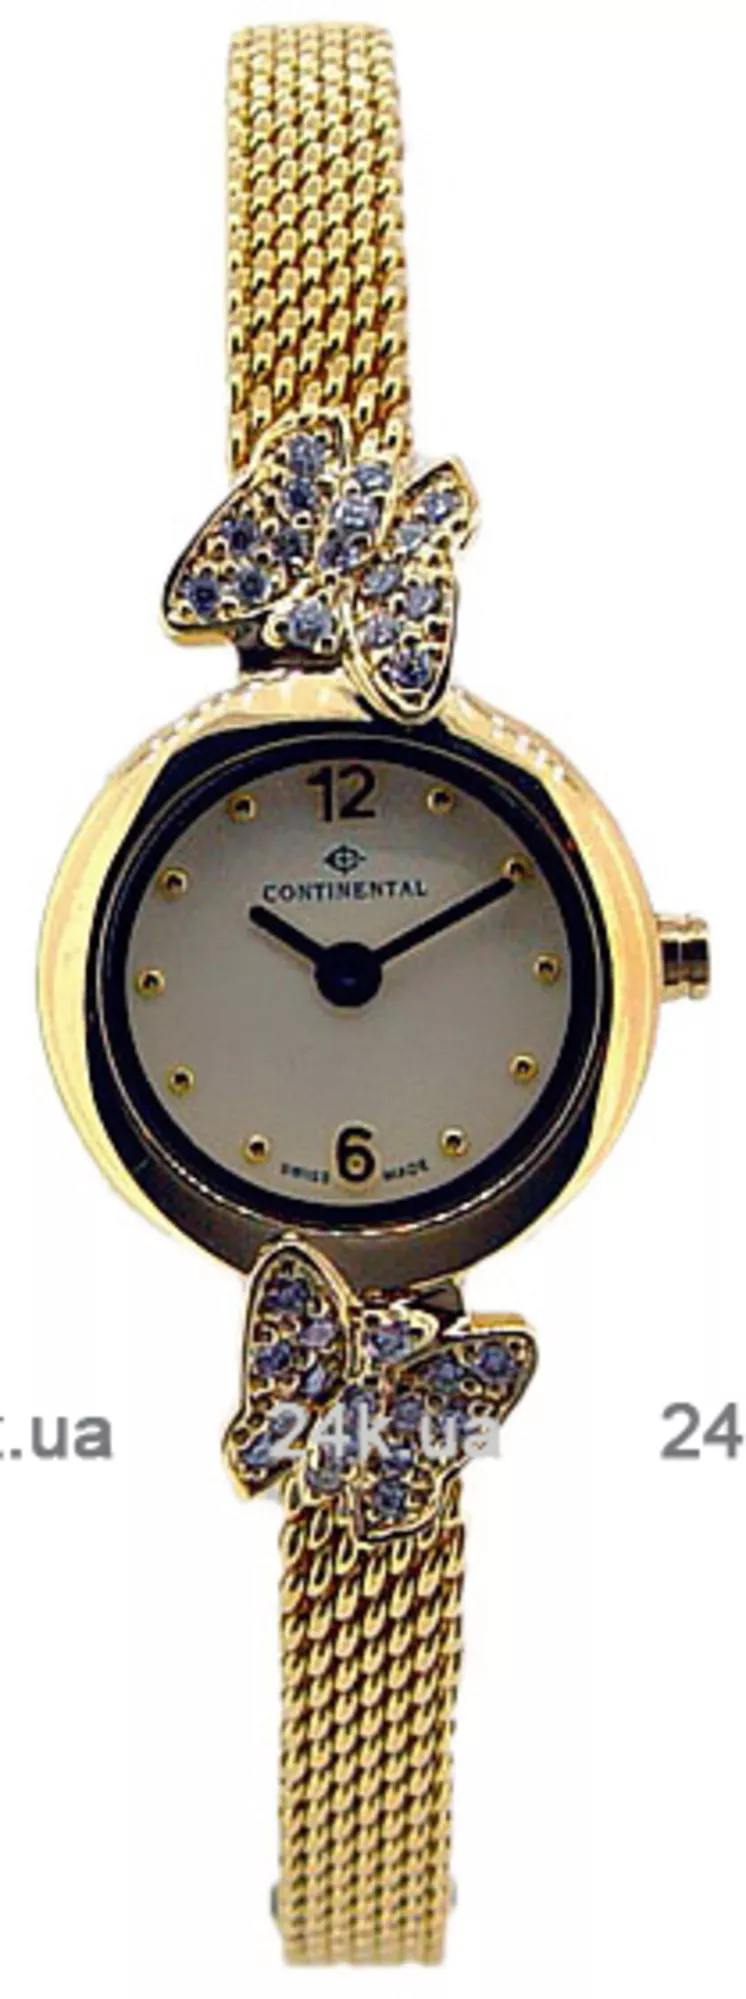 Часы Continental 7978-236